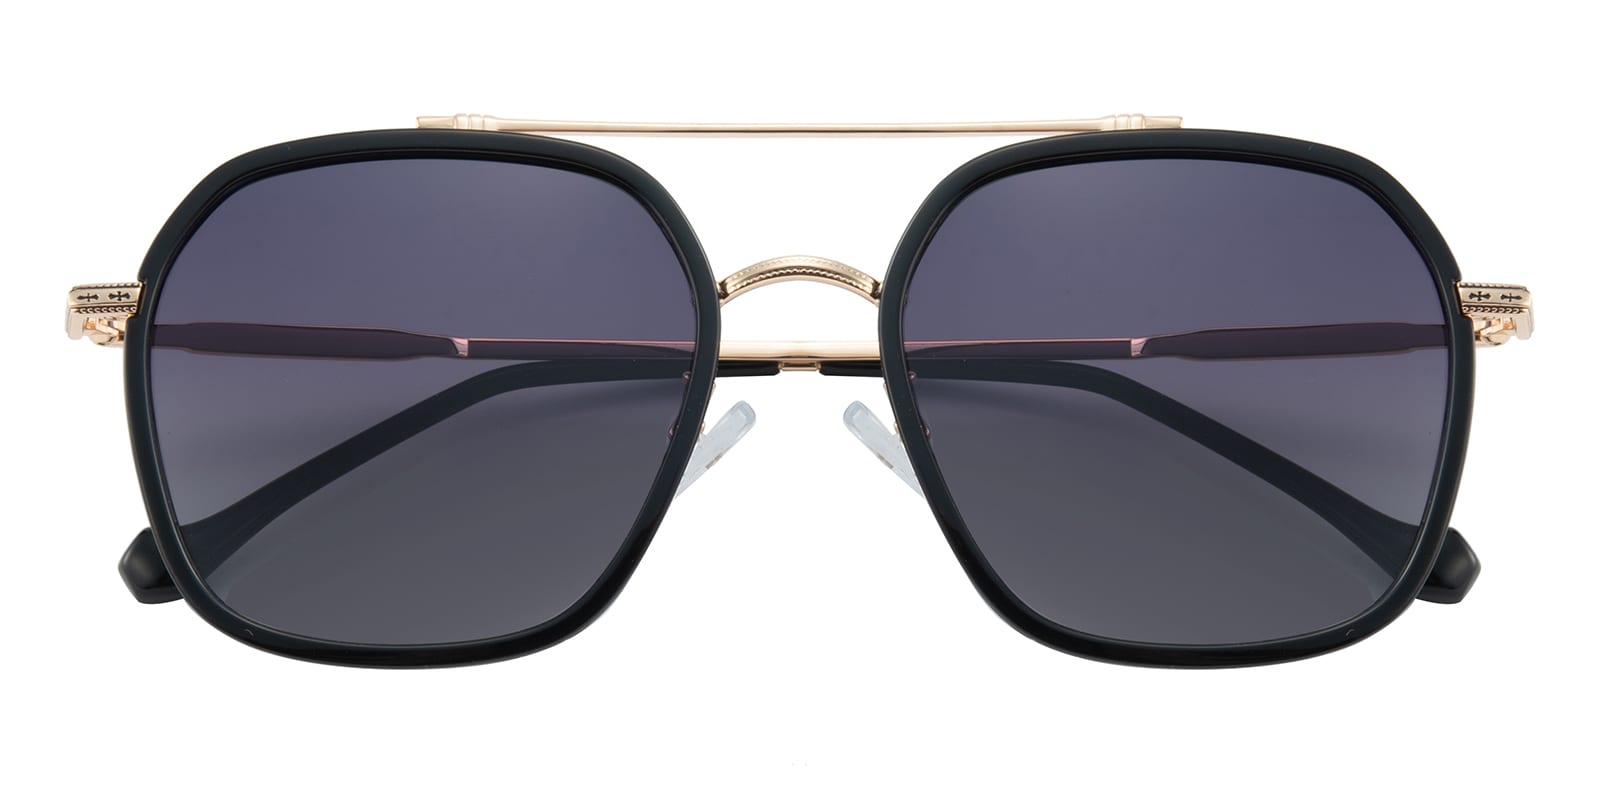 Aviator Sunglasses, Full Frame Black/Golden TR90,Metal - SUP1294